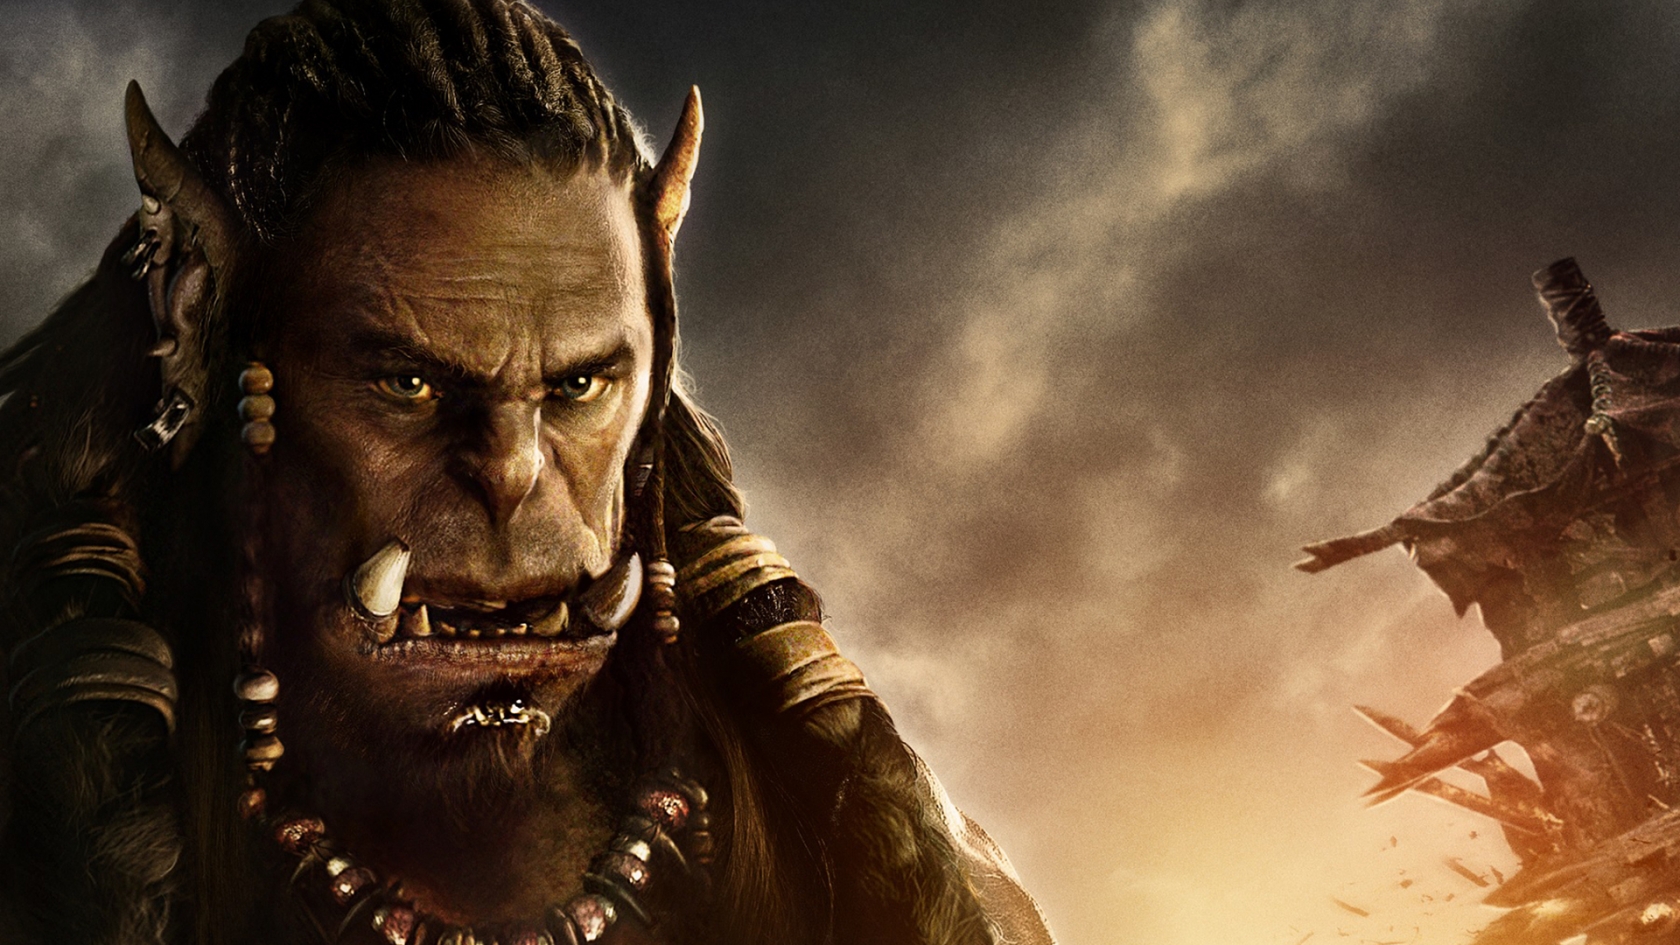 Warcraft Movie 2016 Durotan for 1680 x 945 HDTV resolution